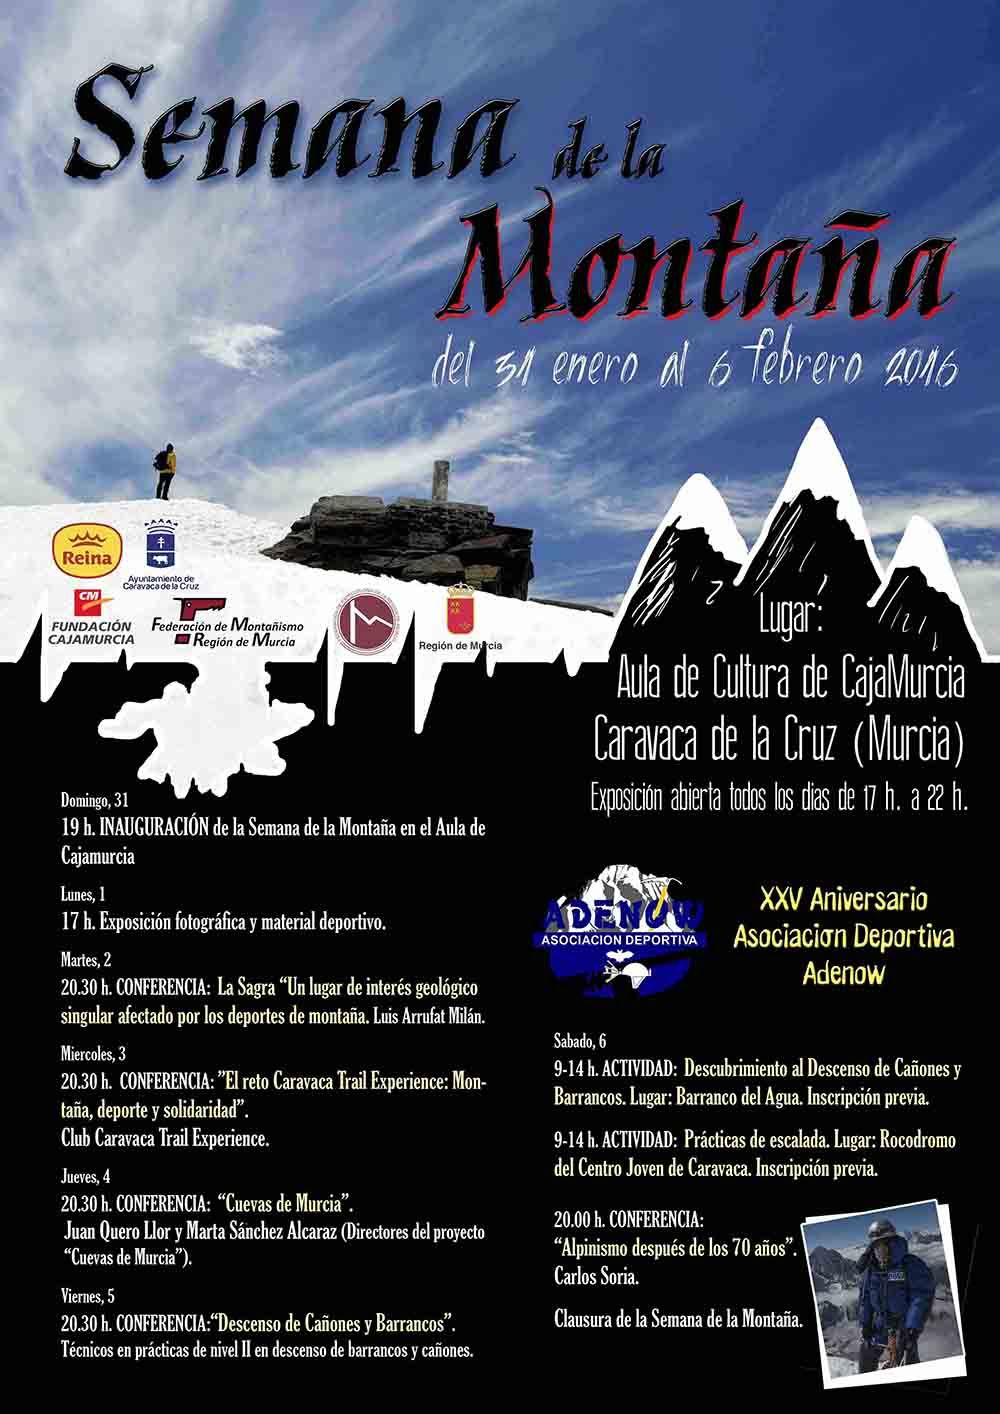 La asociación caravaqueña Adenow celebra su 25 aniversario con la ‘Semana de la montaña’